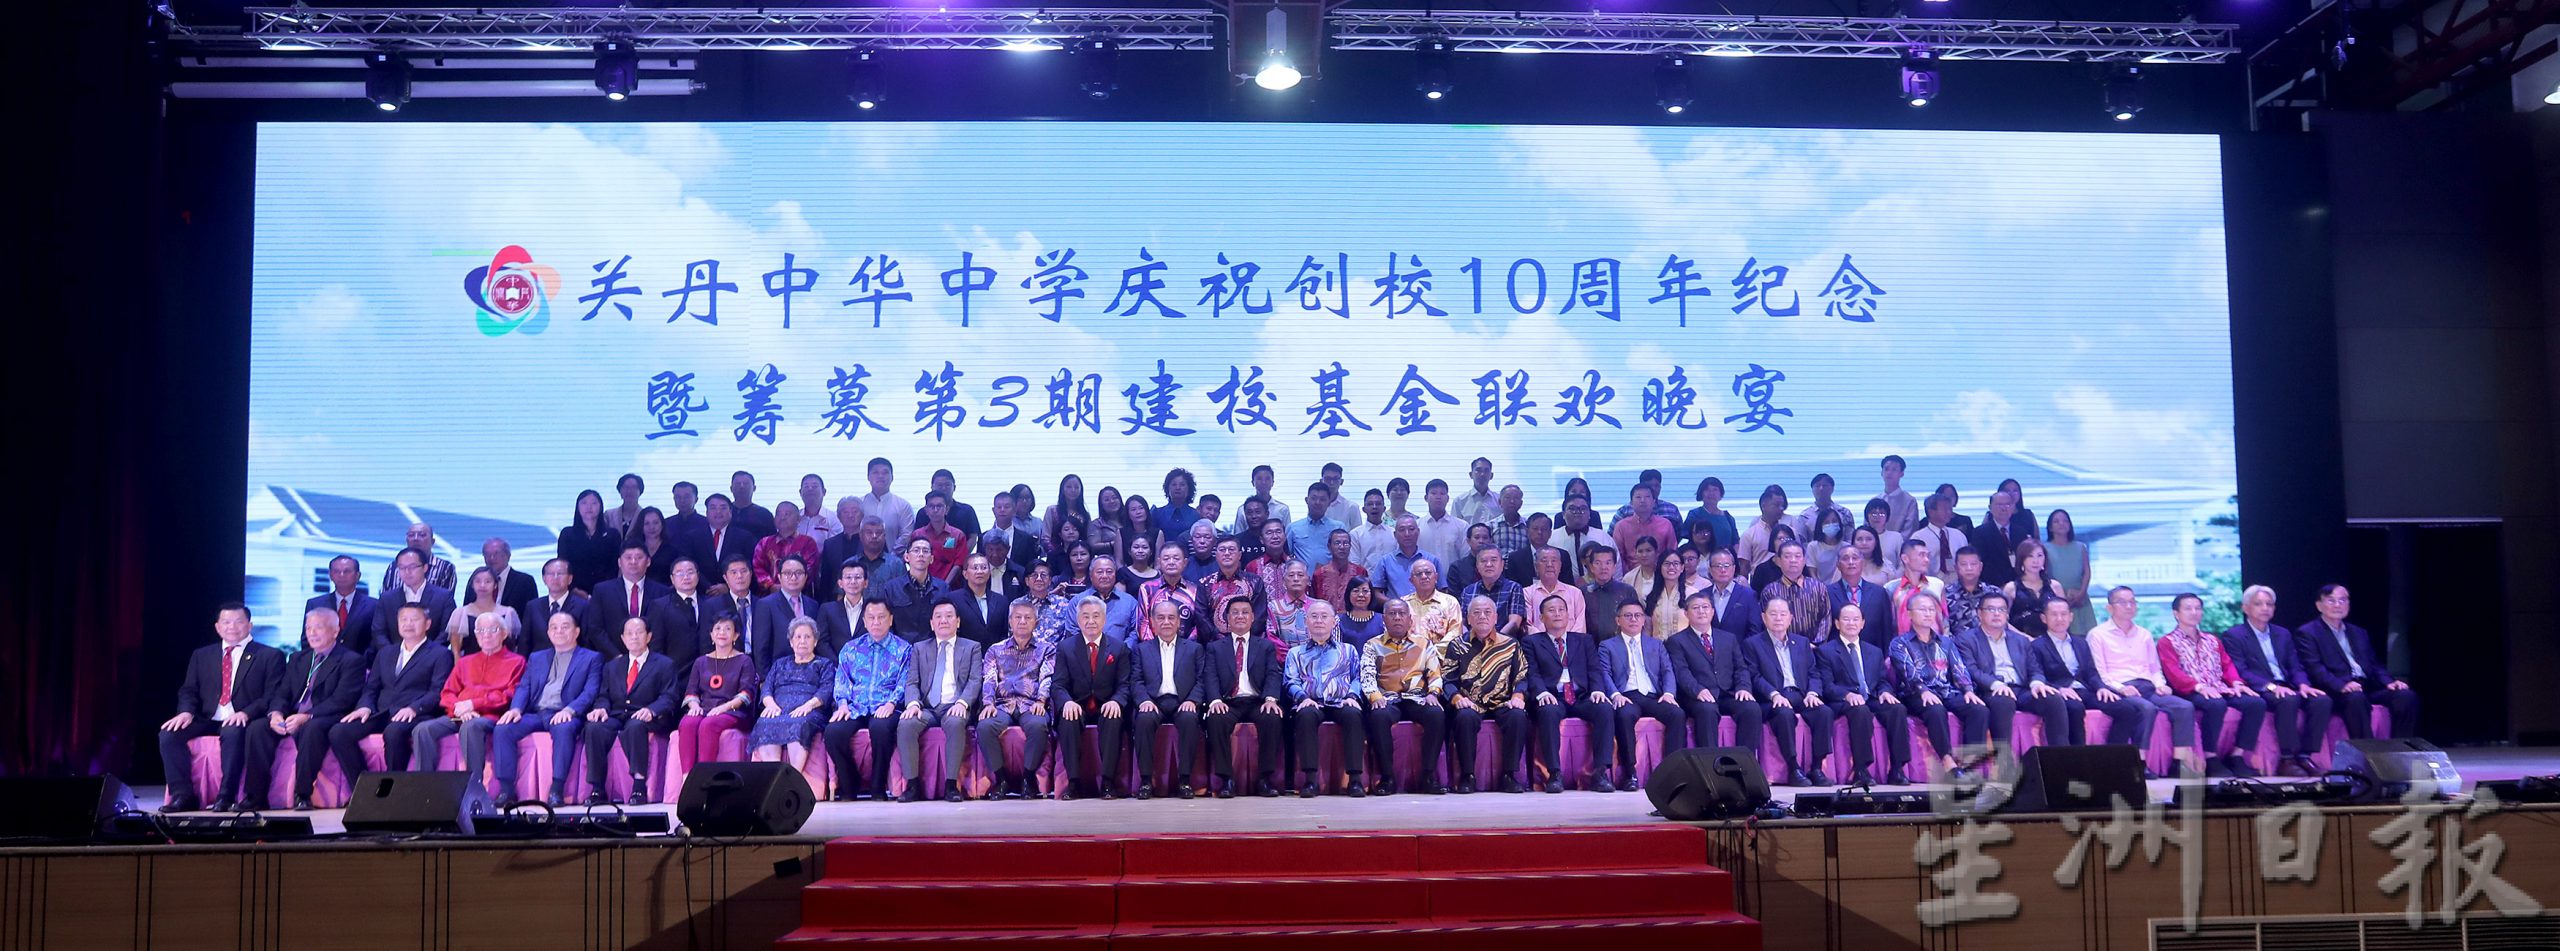 关丹中华中学庆祝创校10周年纪念筹获1800万令吉